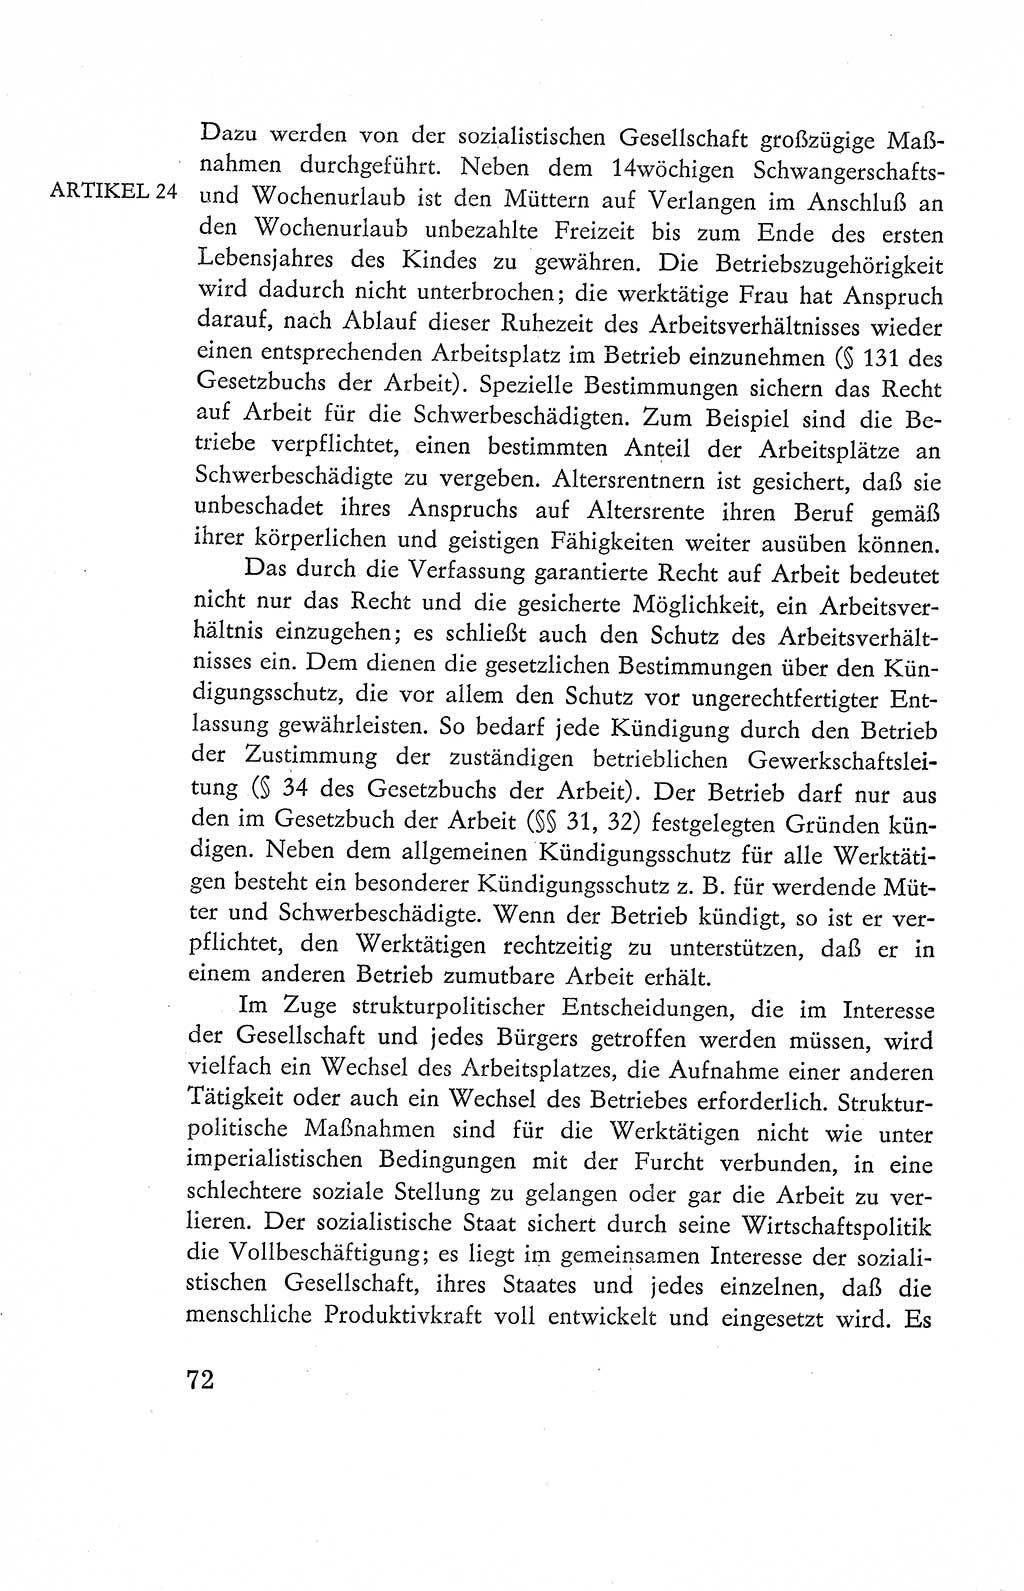 Verfassung der Deutschen Demokratischen Republik (DDR), Dokumente, Kommentar 1969, Band 2, Seite 72 (Verf. DDR Dok. Komm. 1969, Bd. 2, S. 72)